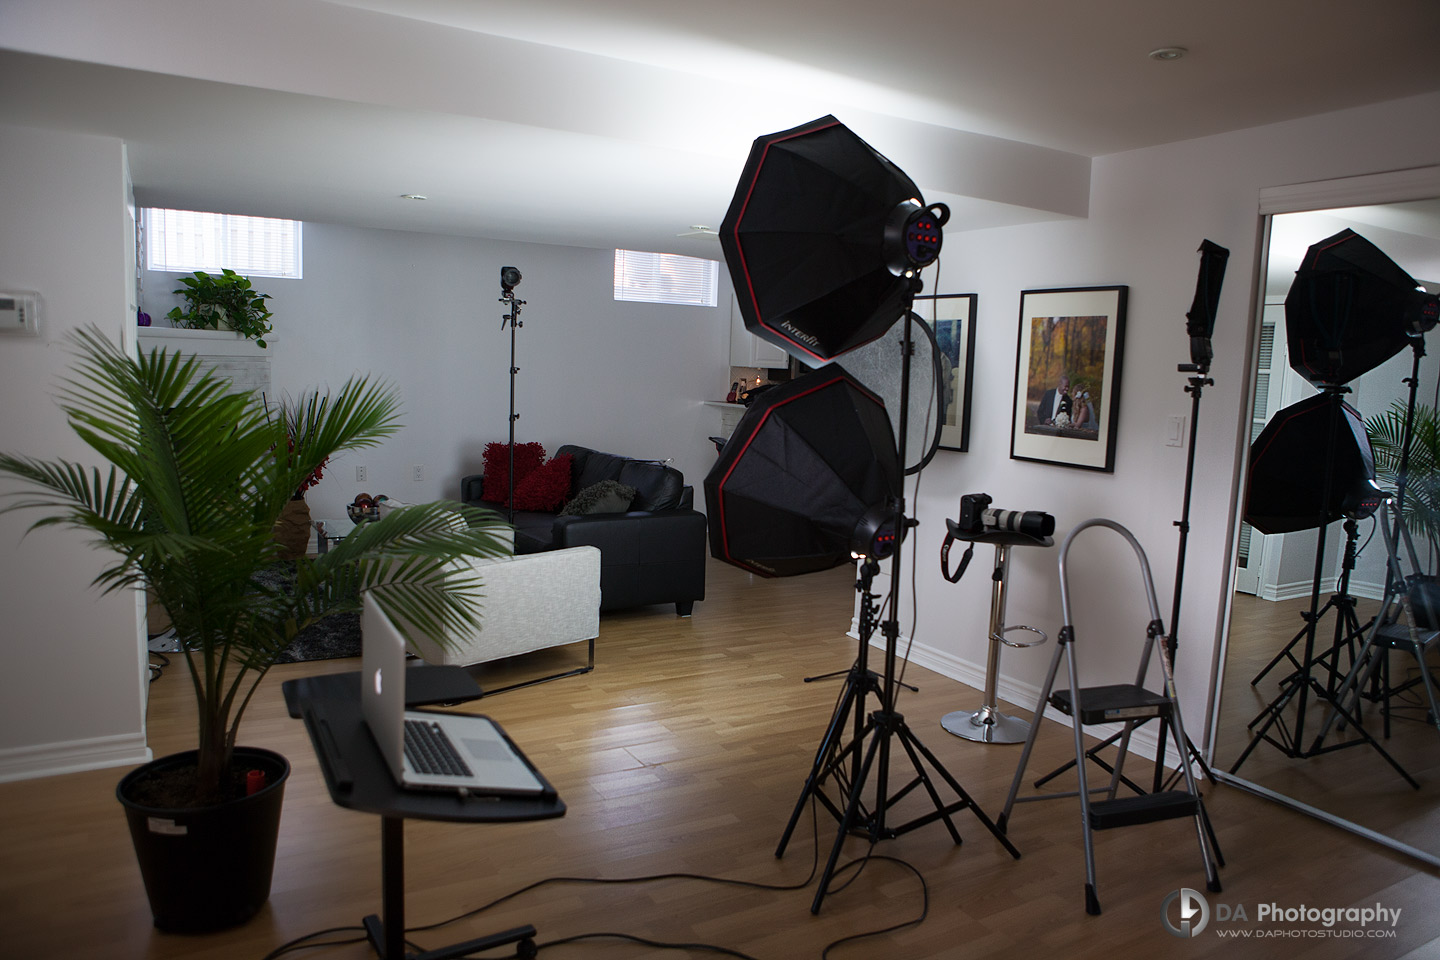 DA Photo Studio - Behind the scene, corporate session